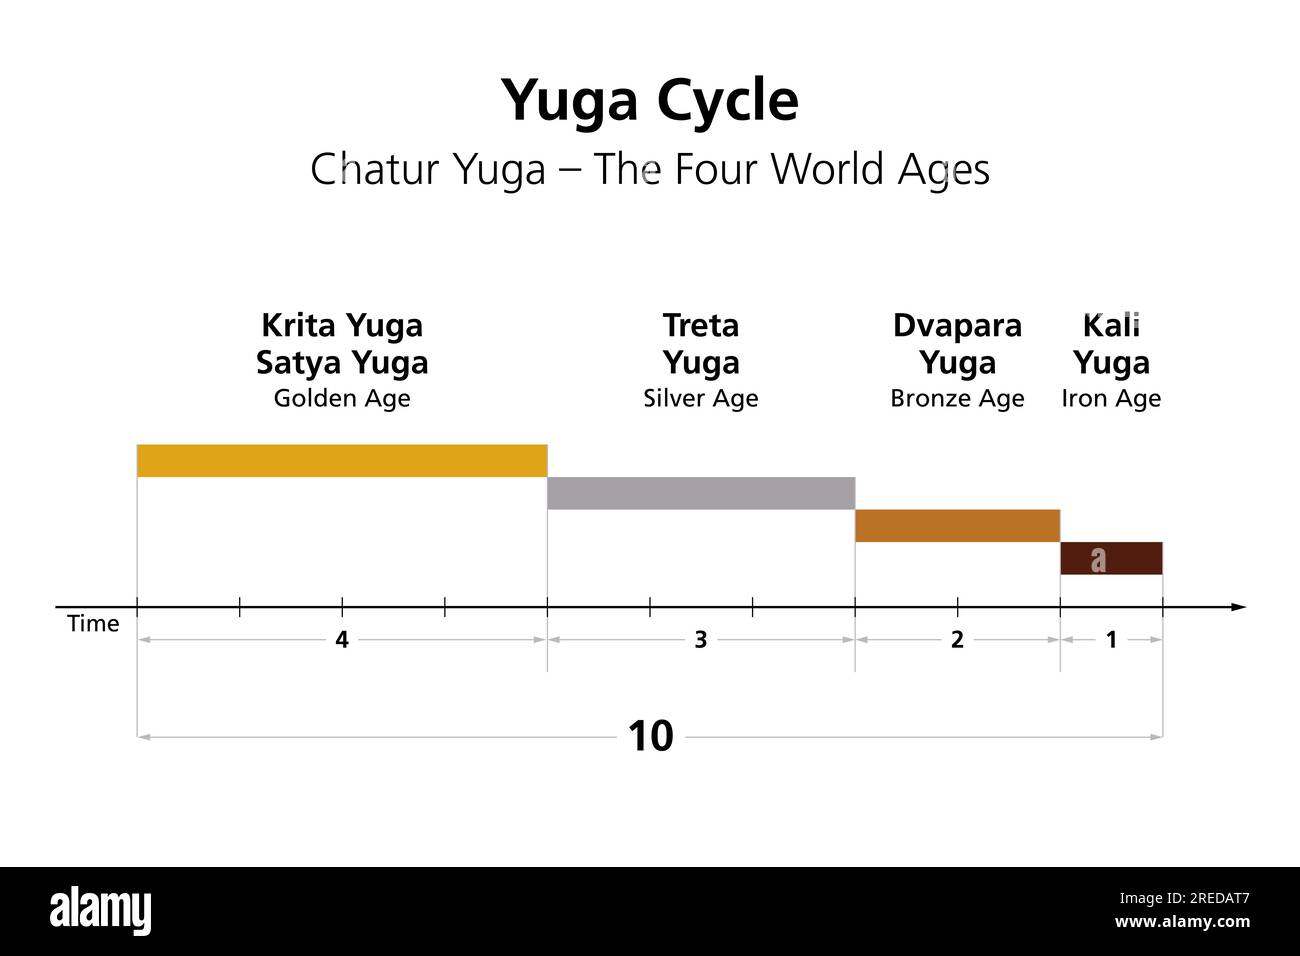 Yuga cycle or chatur yuga, the four world ages in Hindu cosmology, beginning with Satya or Krita Yuga, followed by Treta, Dvapara and Kali Yuga. Stock Photo